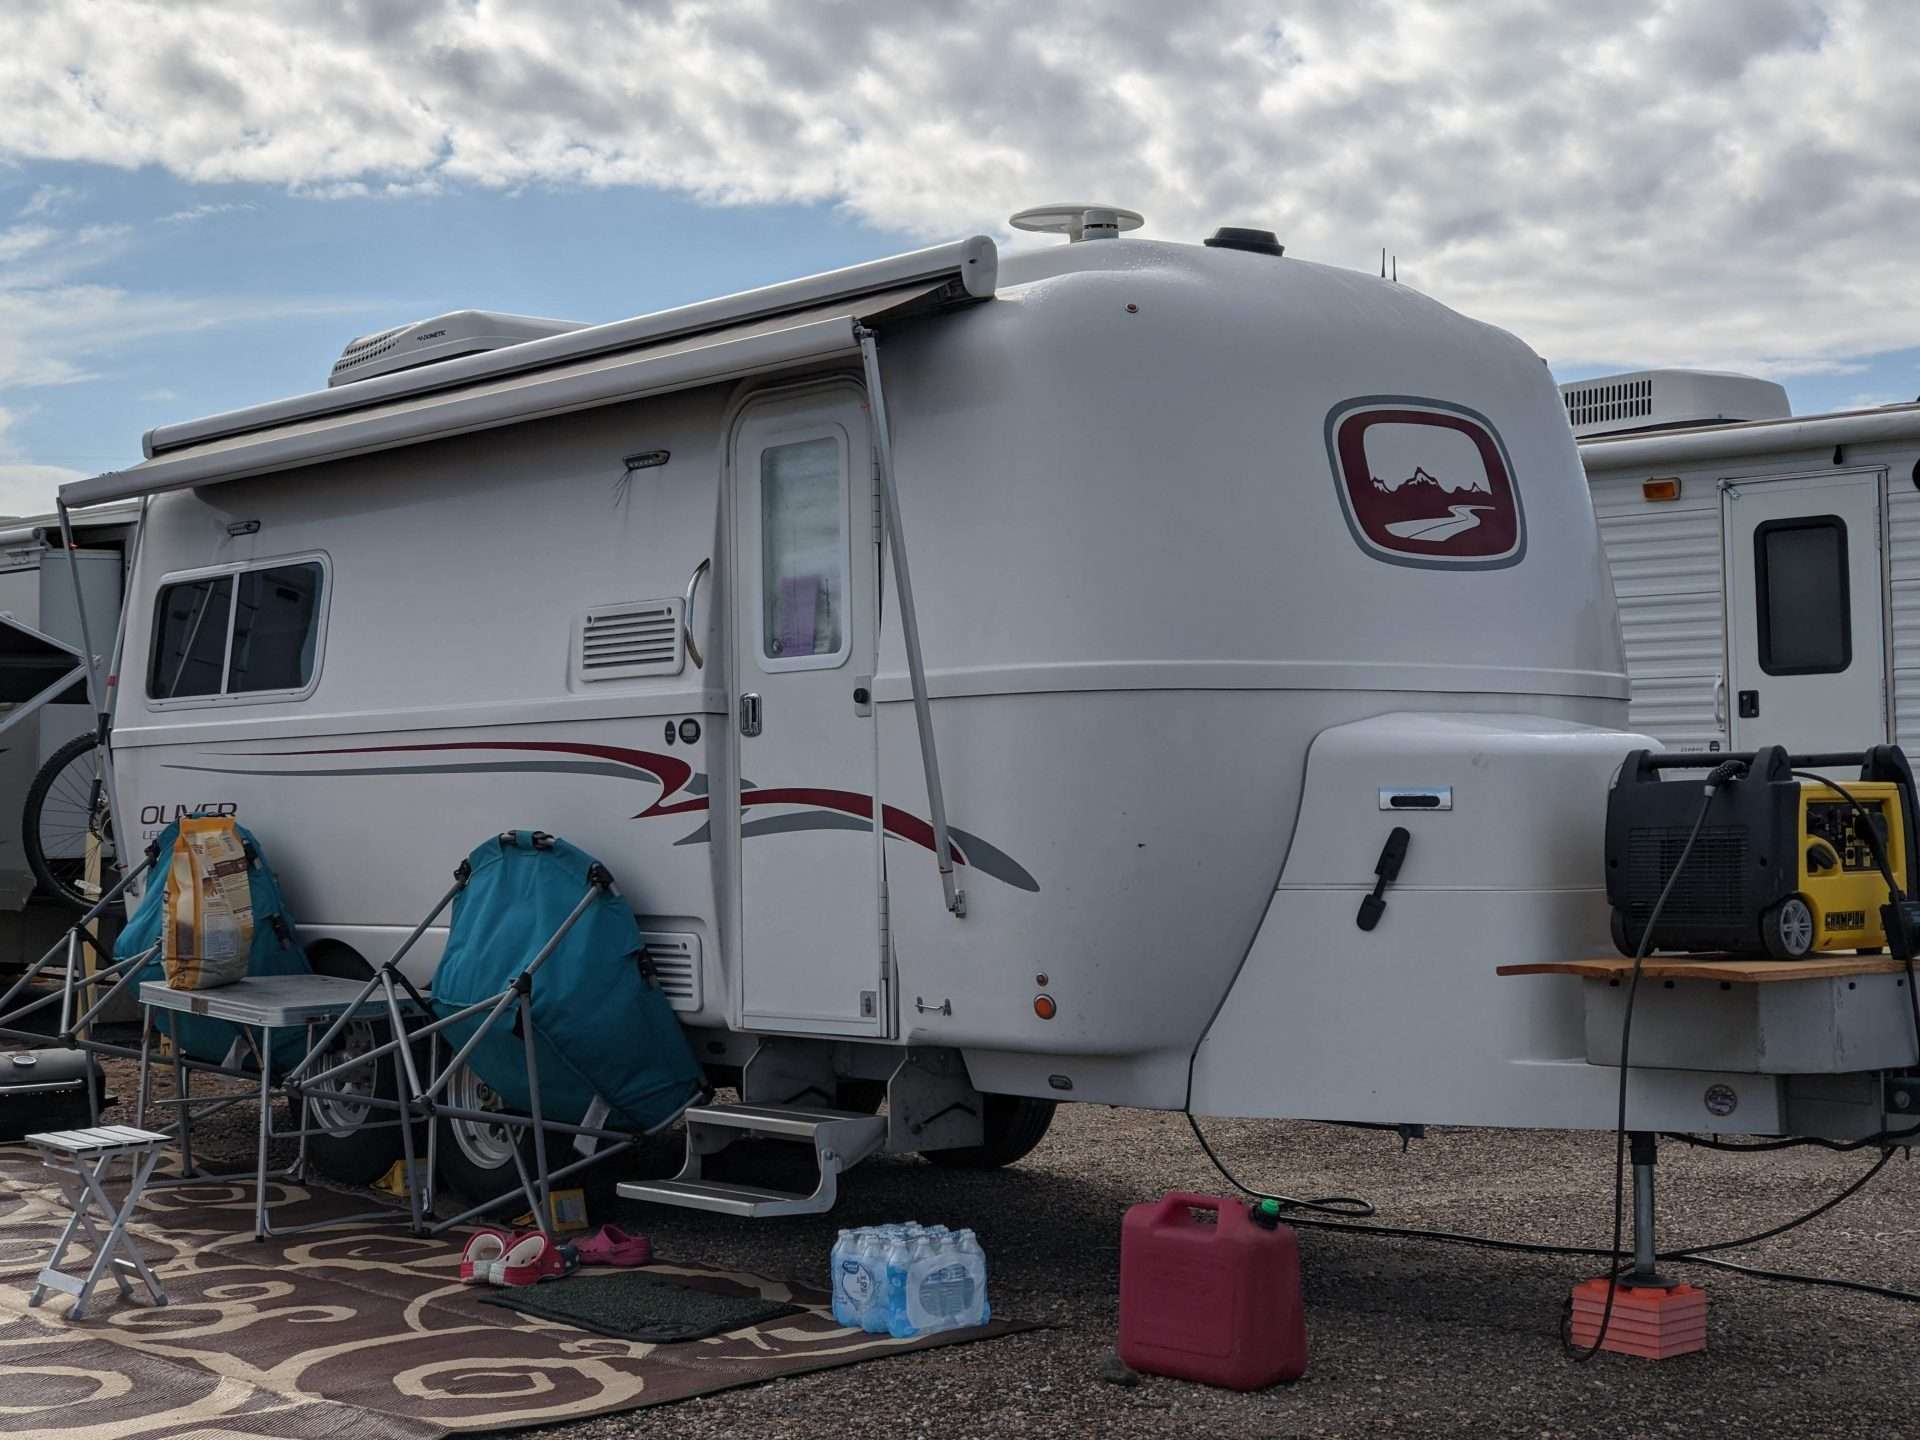 Oliver fiberglass camper at campsite.